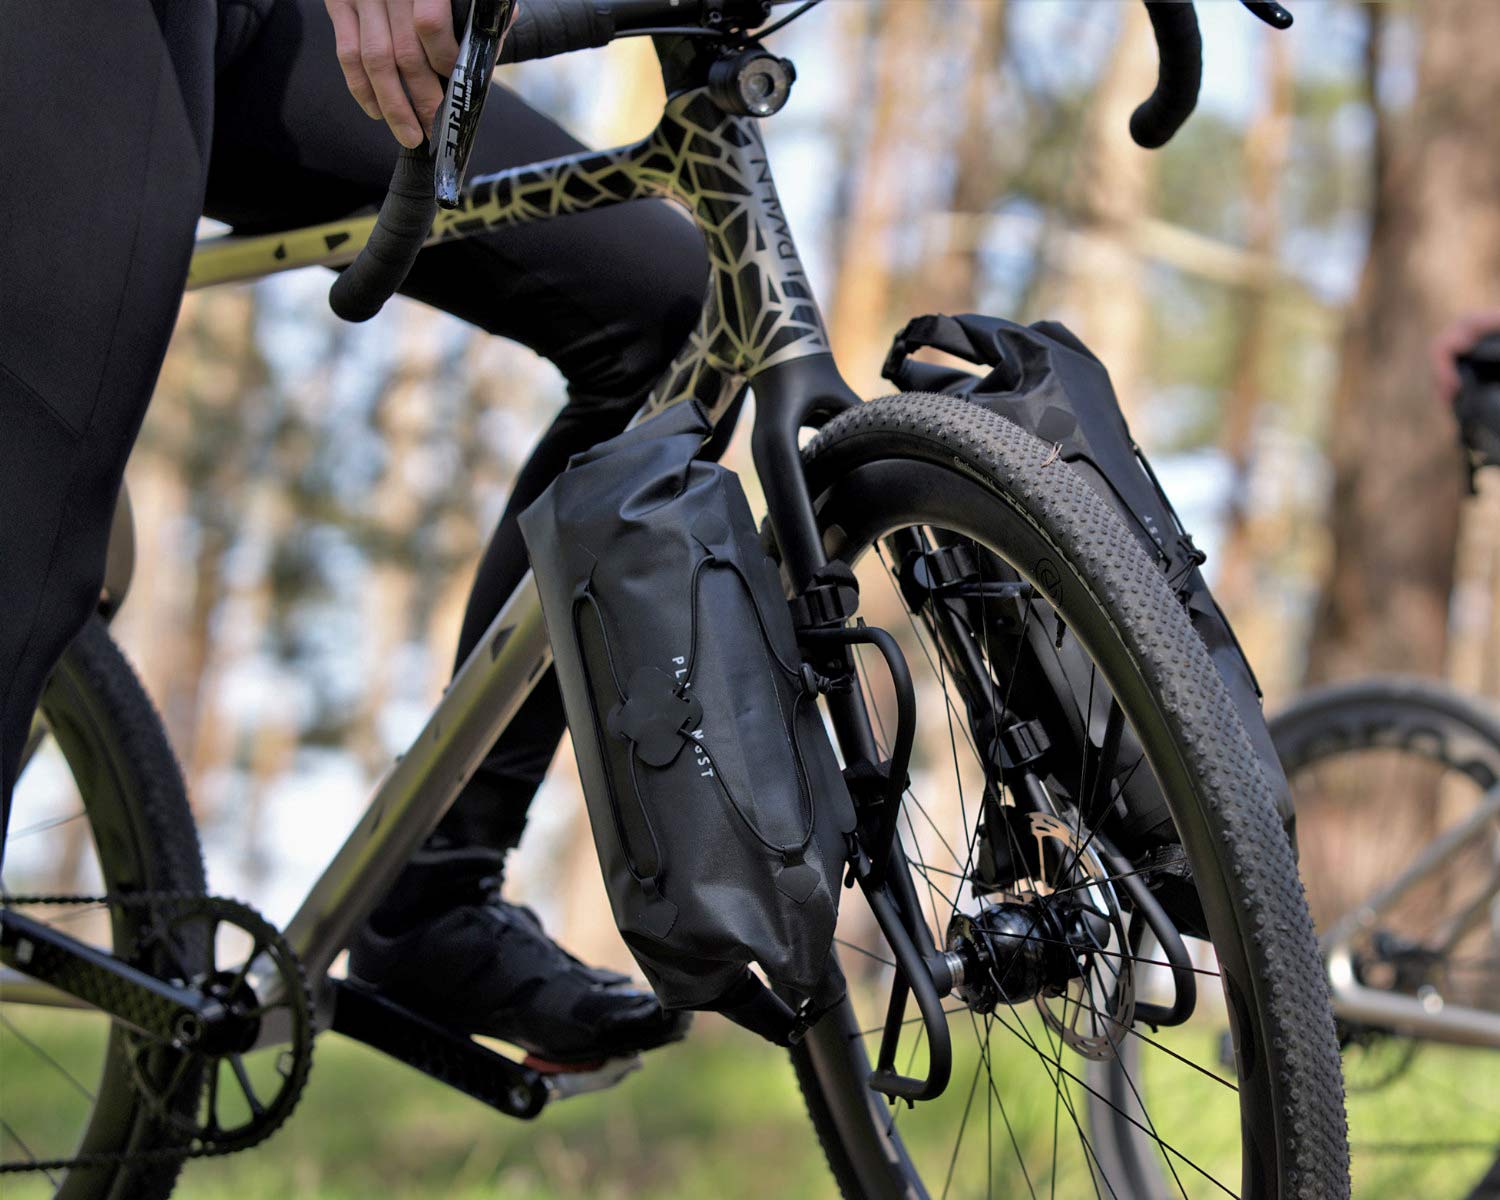 Urwahn Acros EDT gravel bike, limited edition 3D-printed steel no-seattube gravel road adventure bike, bikepacking fork